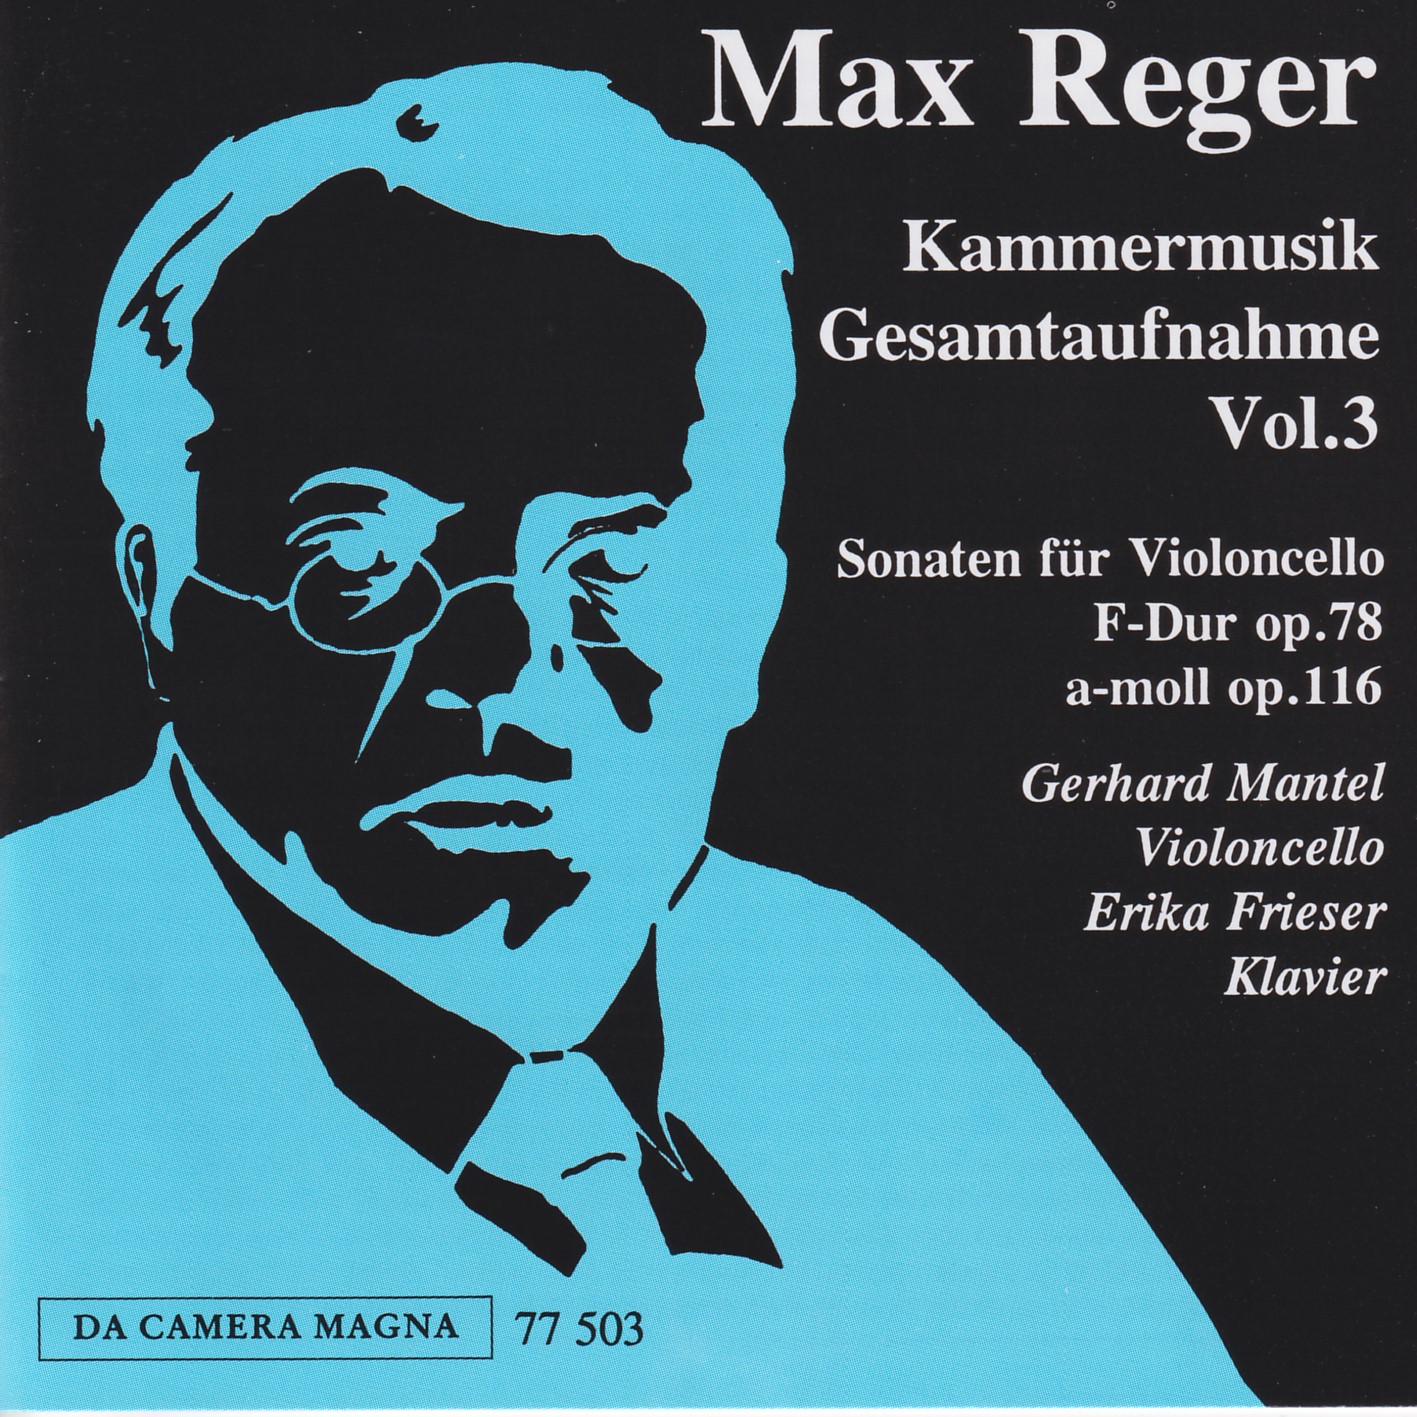 Max Reger - Kammermusik komplett Vol. 3